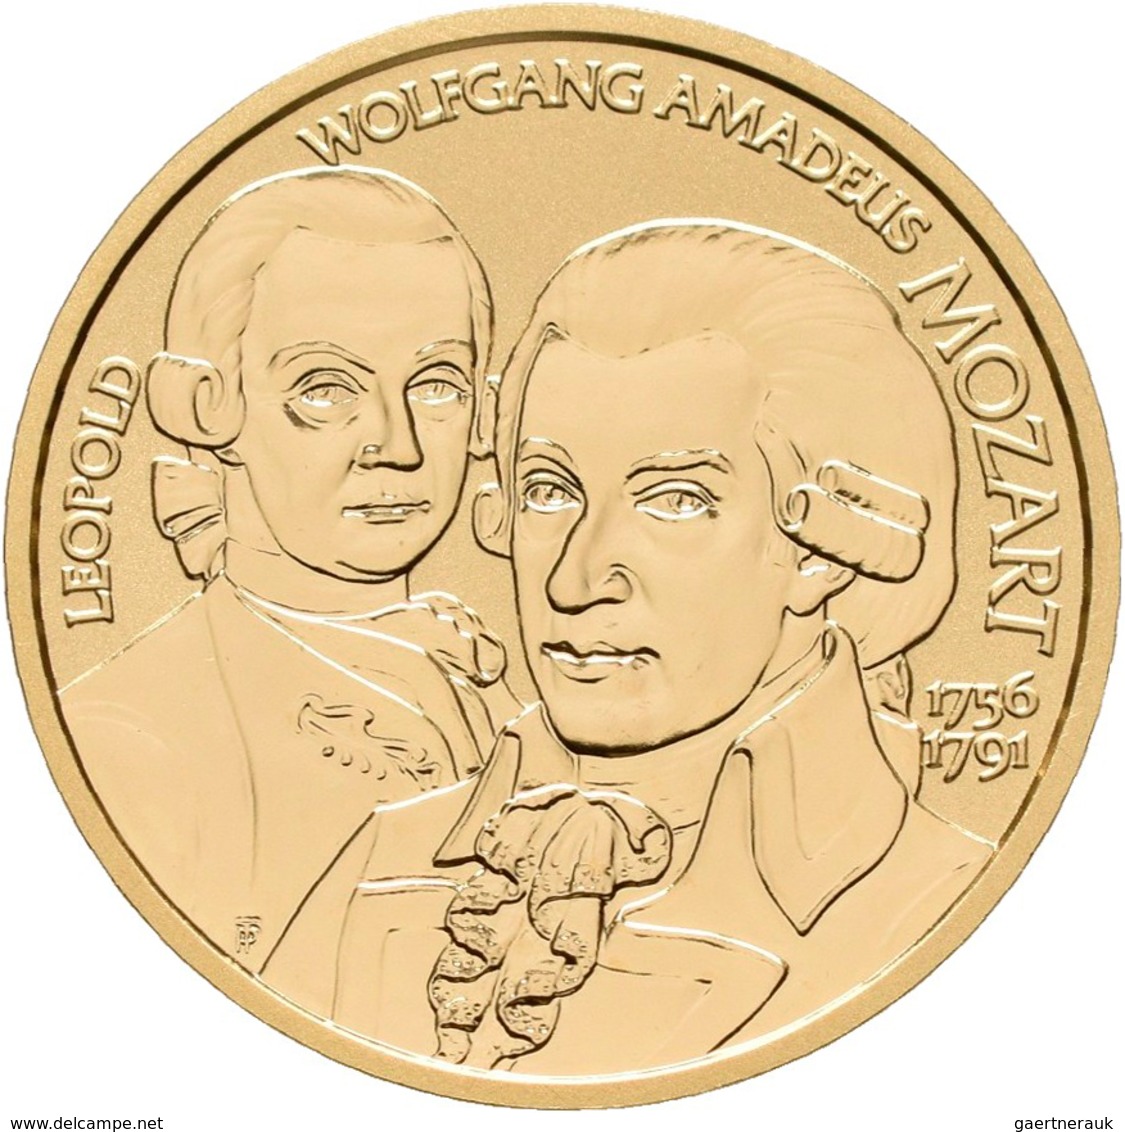 Österreich - Anlagegold: 50 Euro 2006 Grosse Komponisten - Wolfgang Amadeus Mozart. KM# 3130, Friedb - Oesterreich